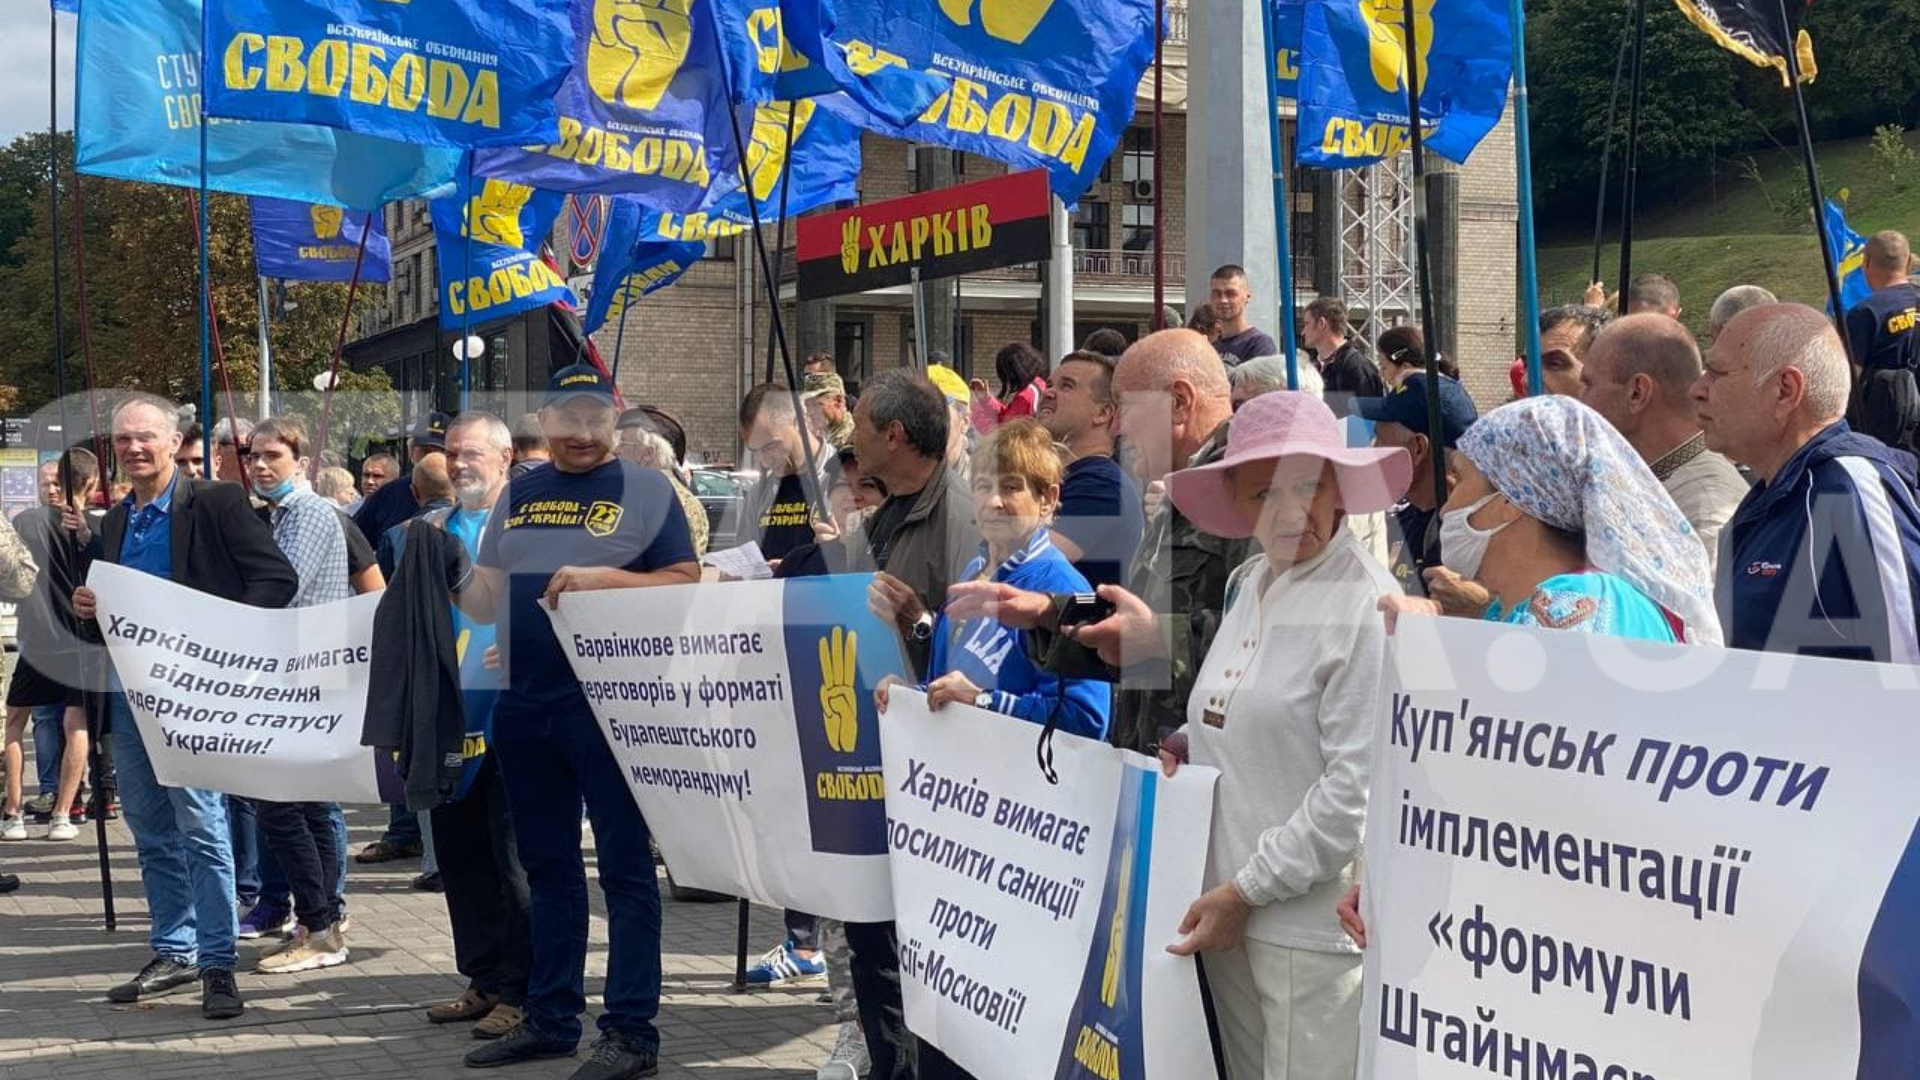 Свобода собирается на марш в центре Киева. Фото: Страна